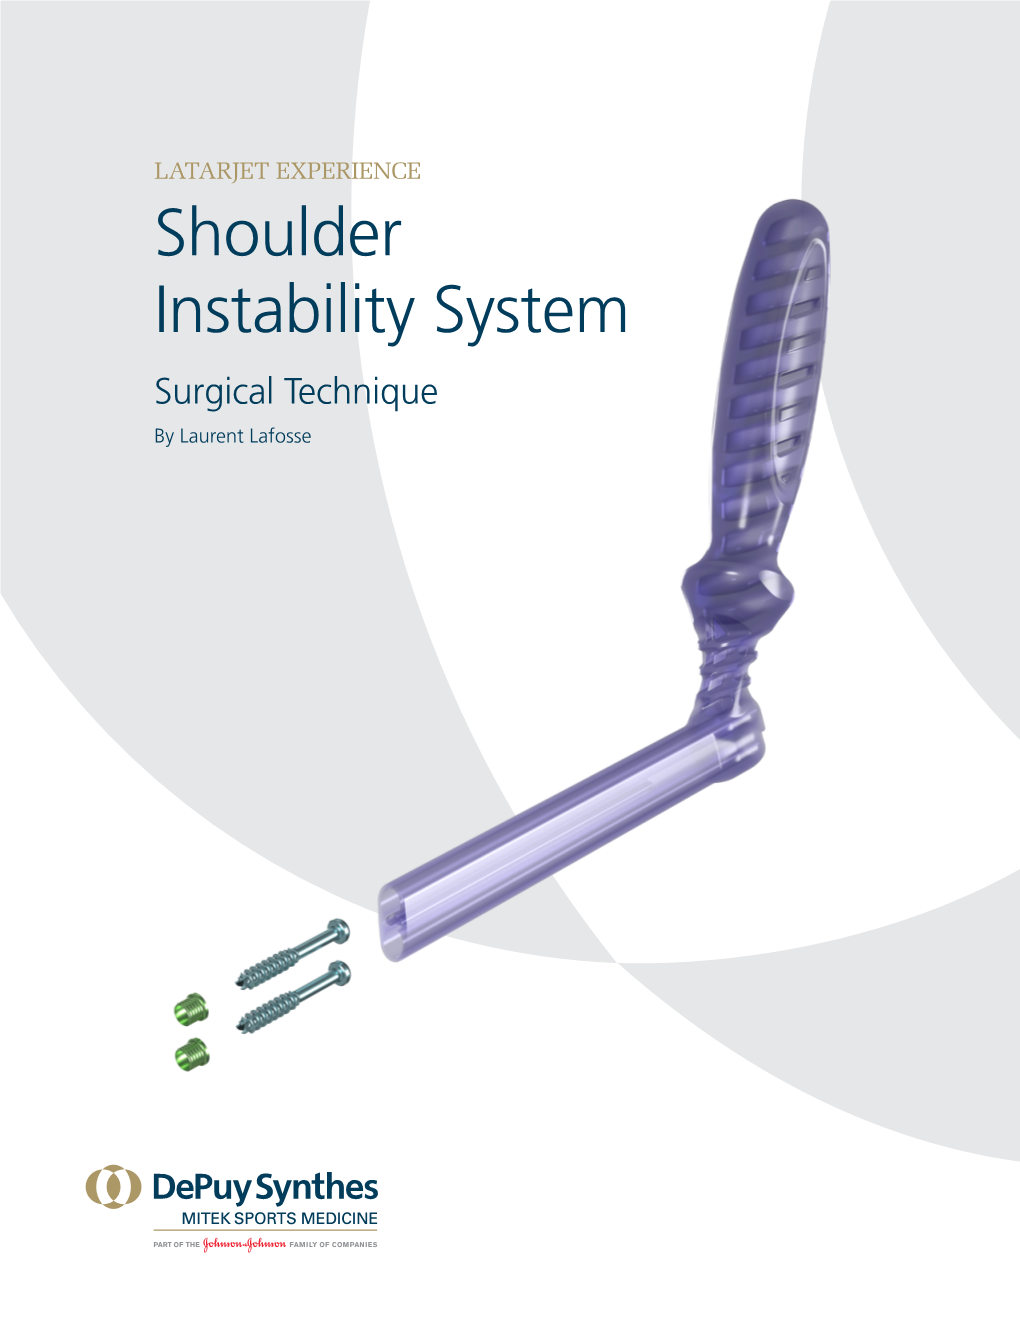 Shoulder Instability System Surgical Technique by Laurent Lafosse